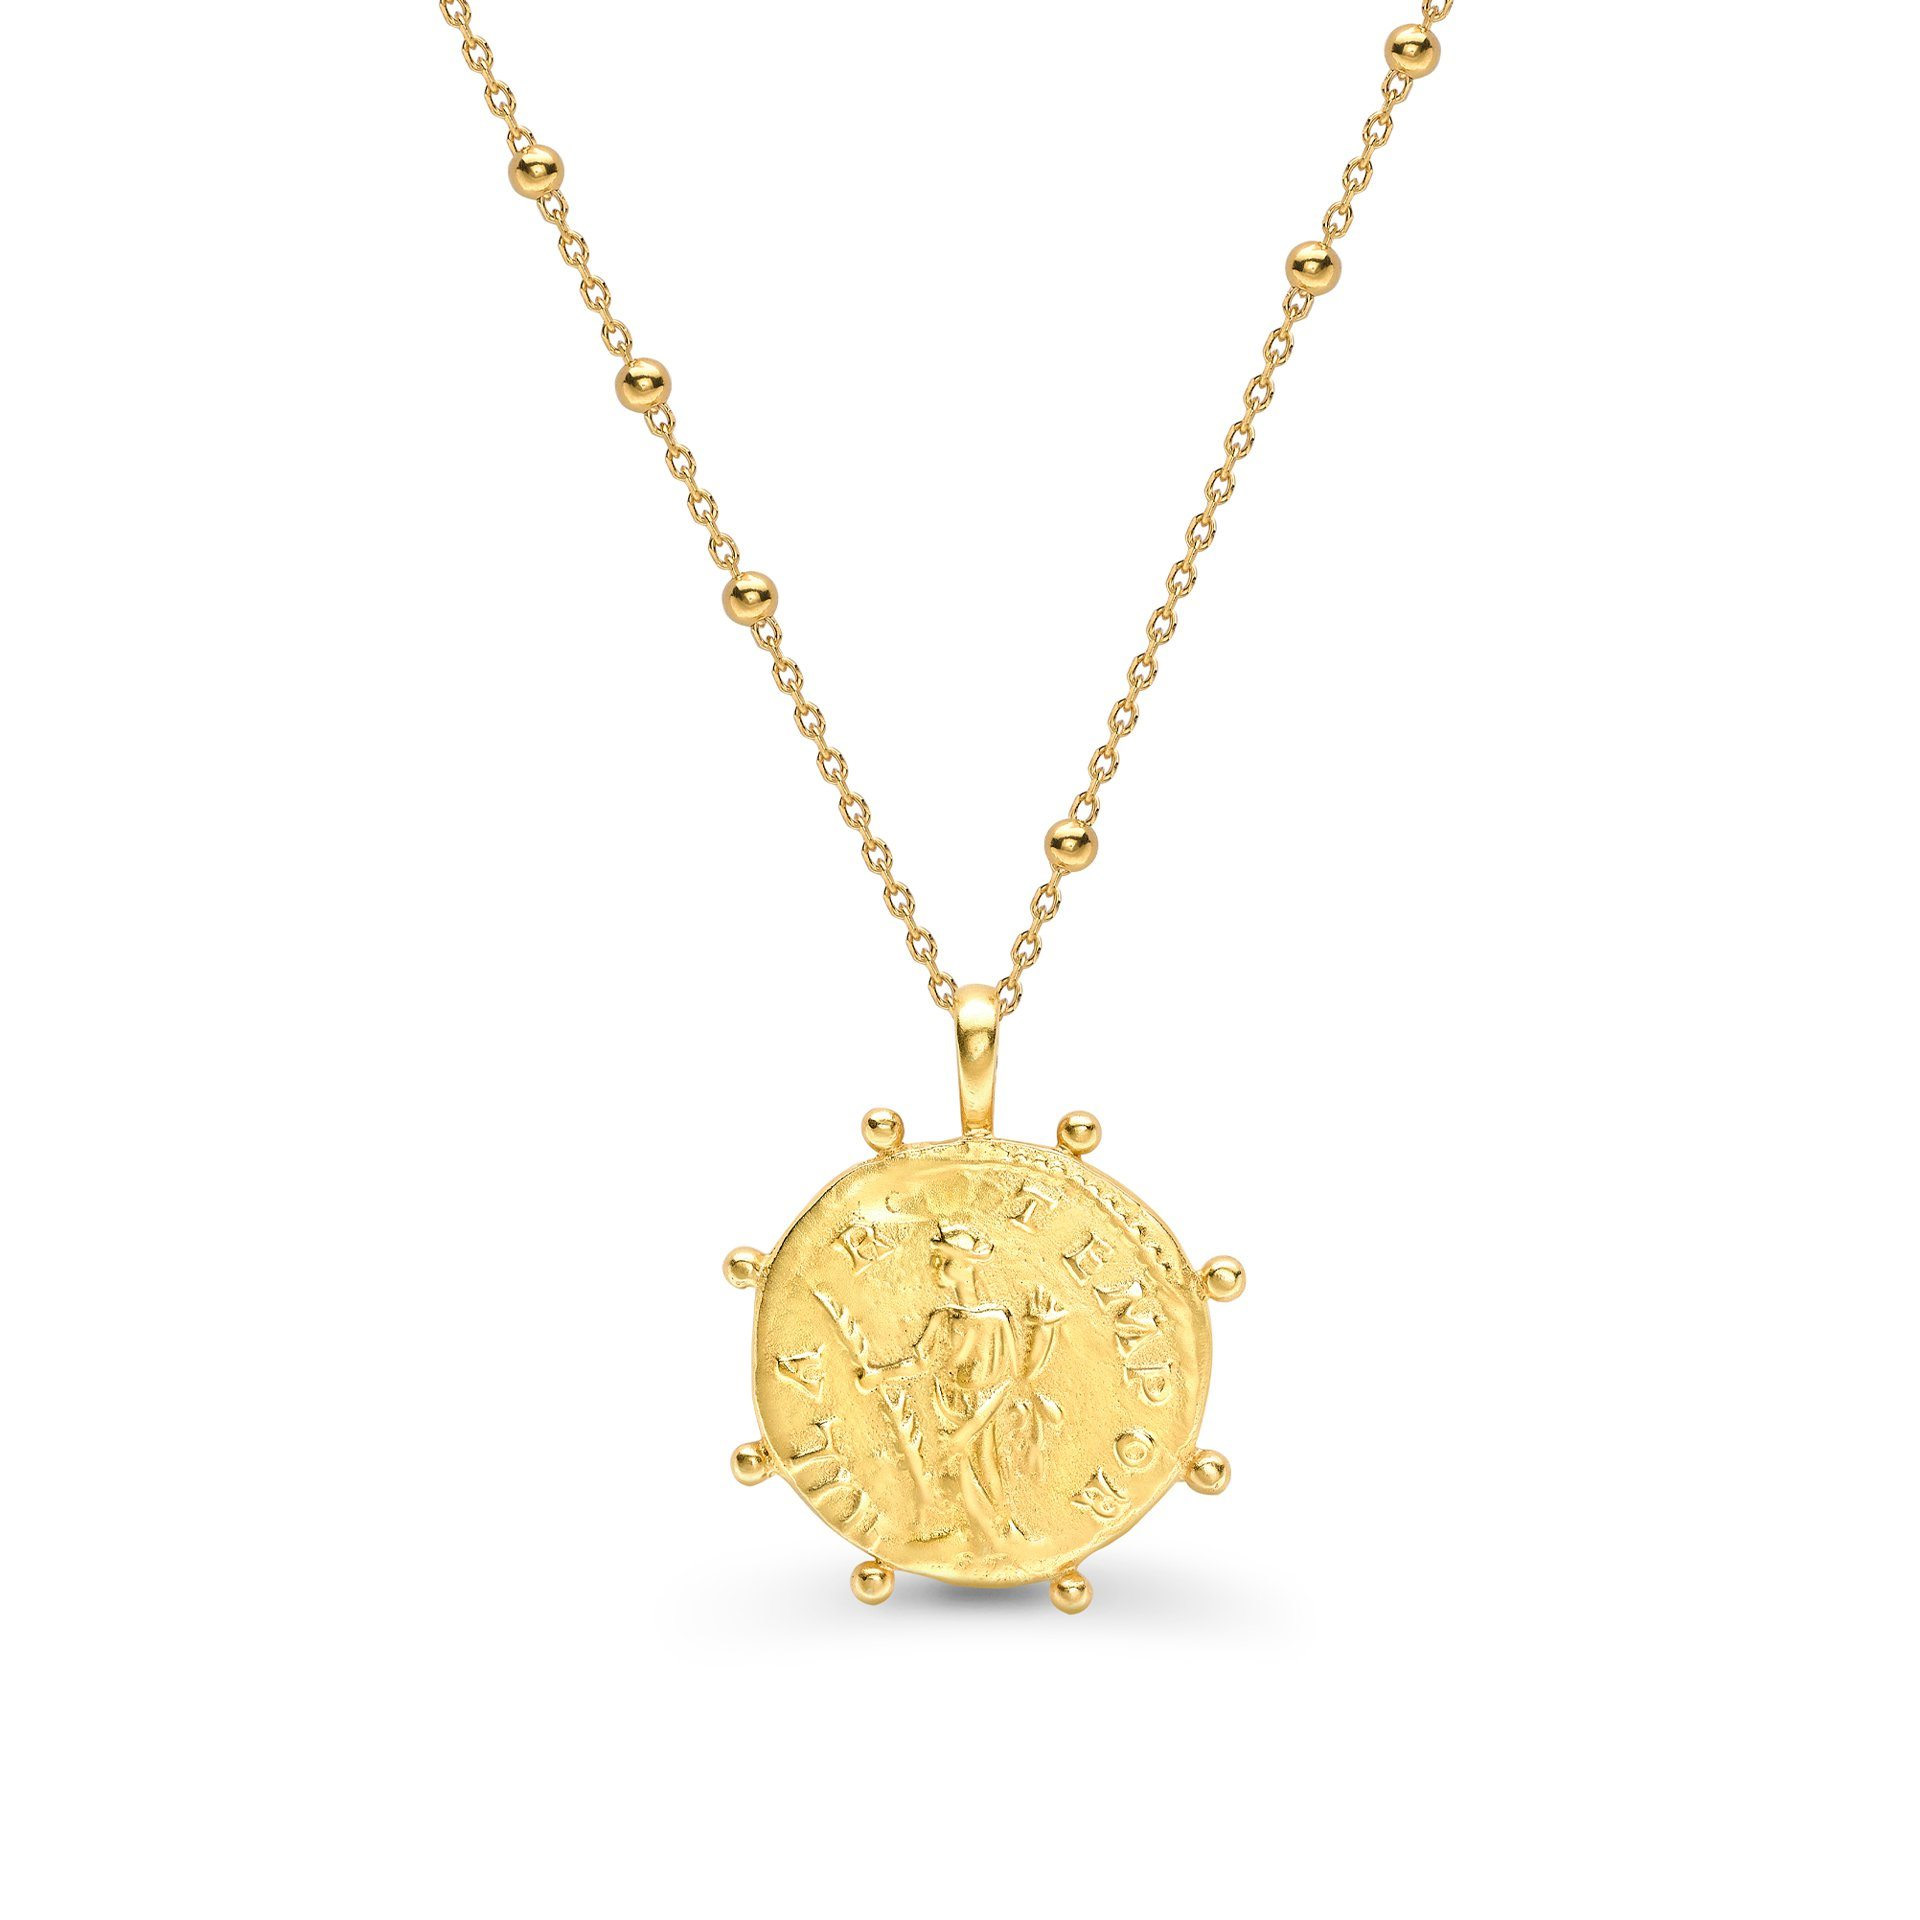 Grosir OEM/ODM Perhiasan kalung emas-vermeil 18 karat dengan koin Romawi pada perhiasan perak rantai manik-manik